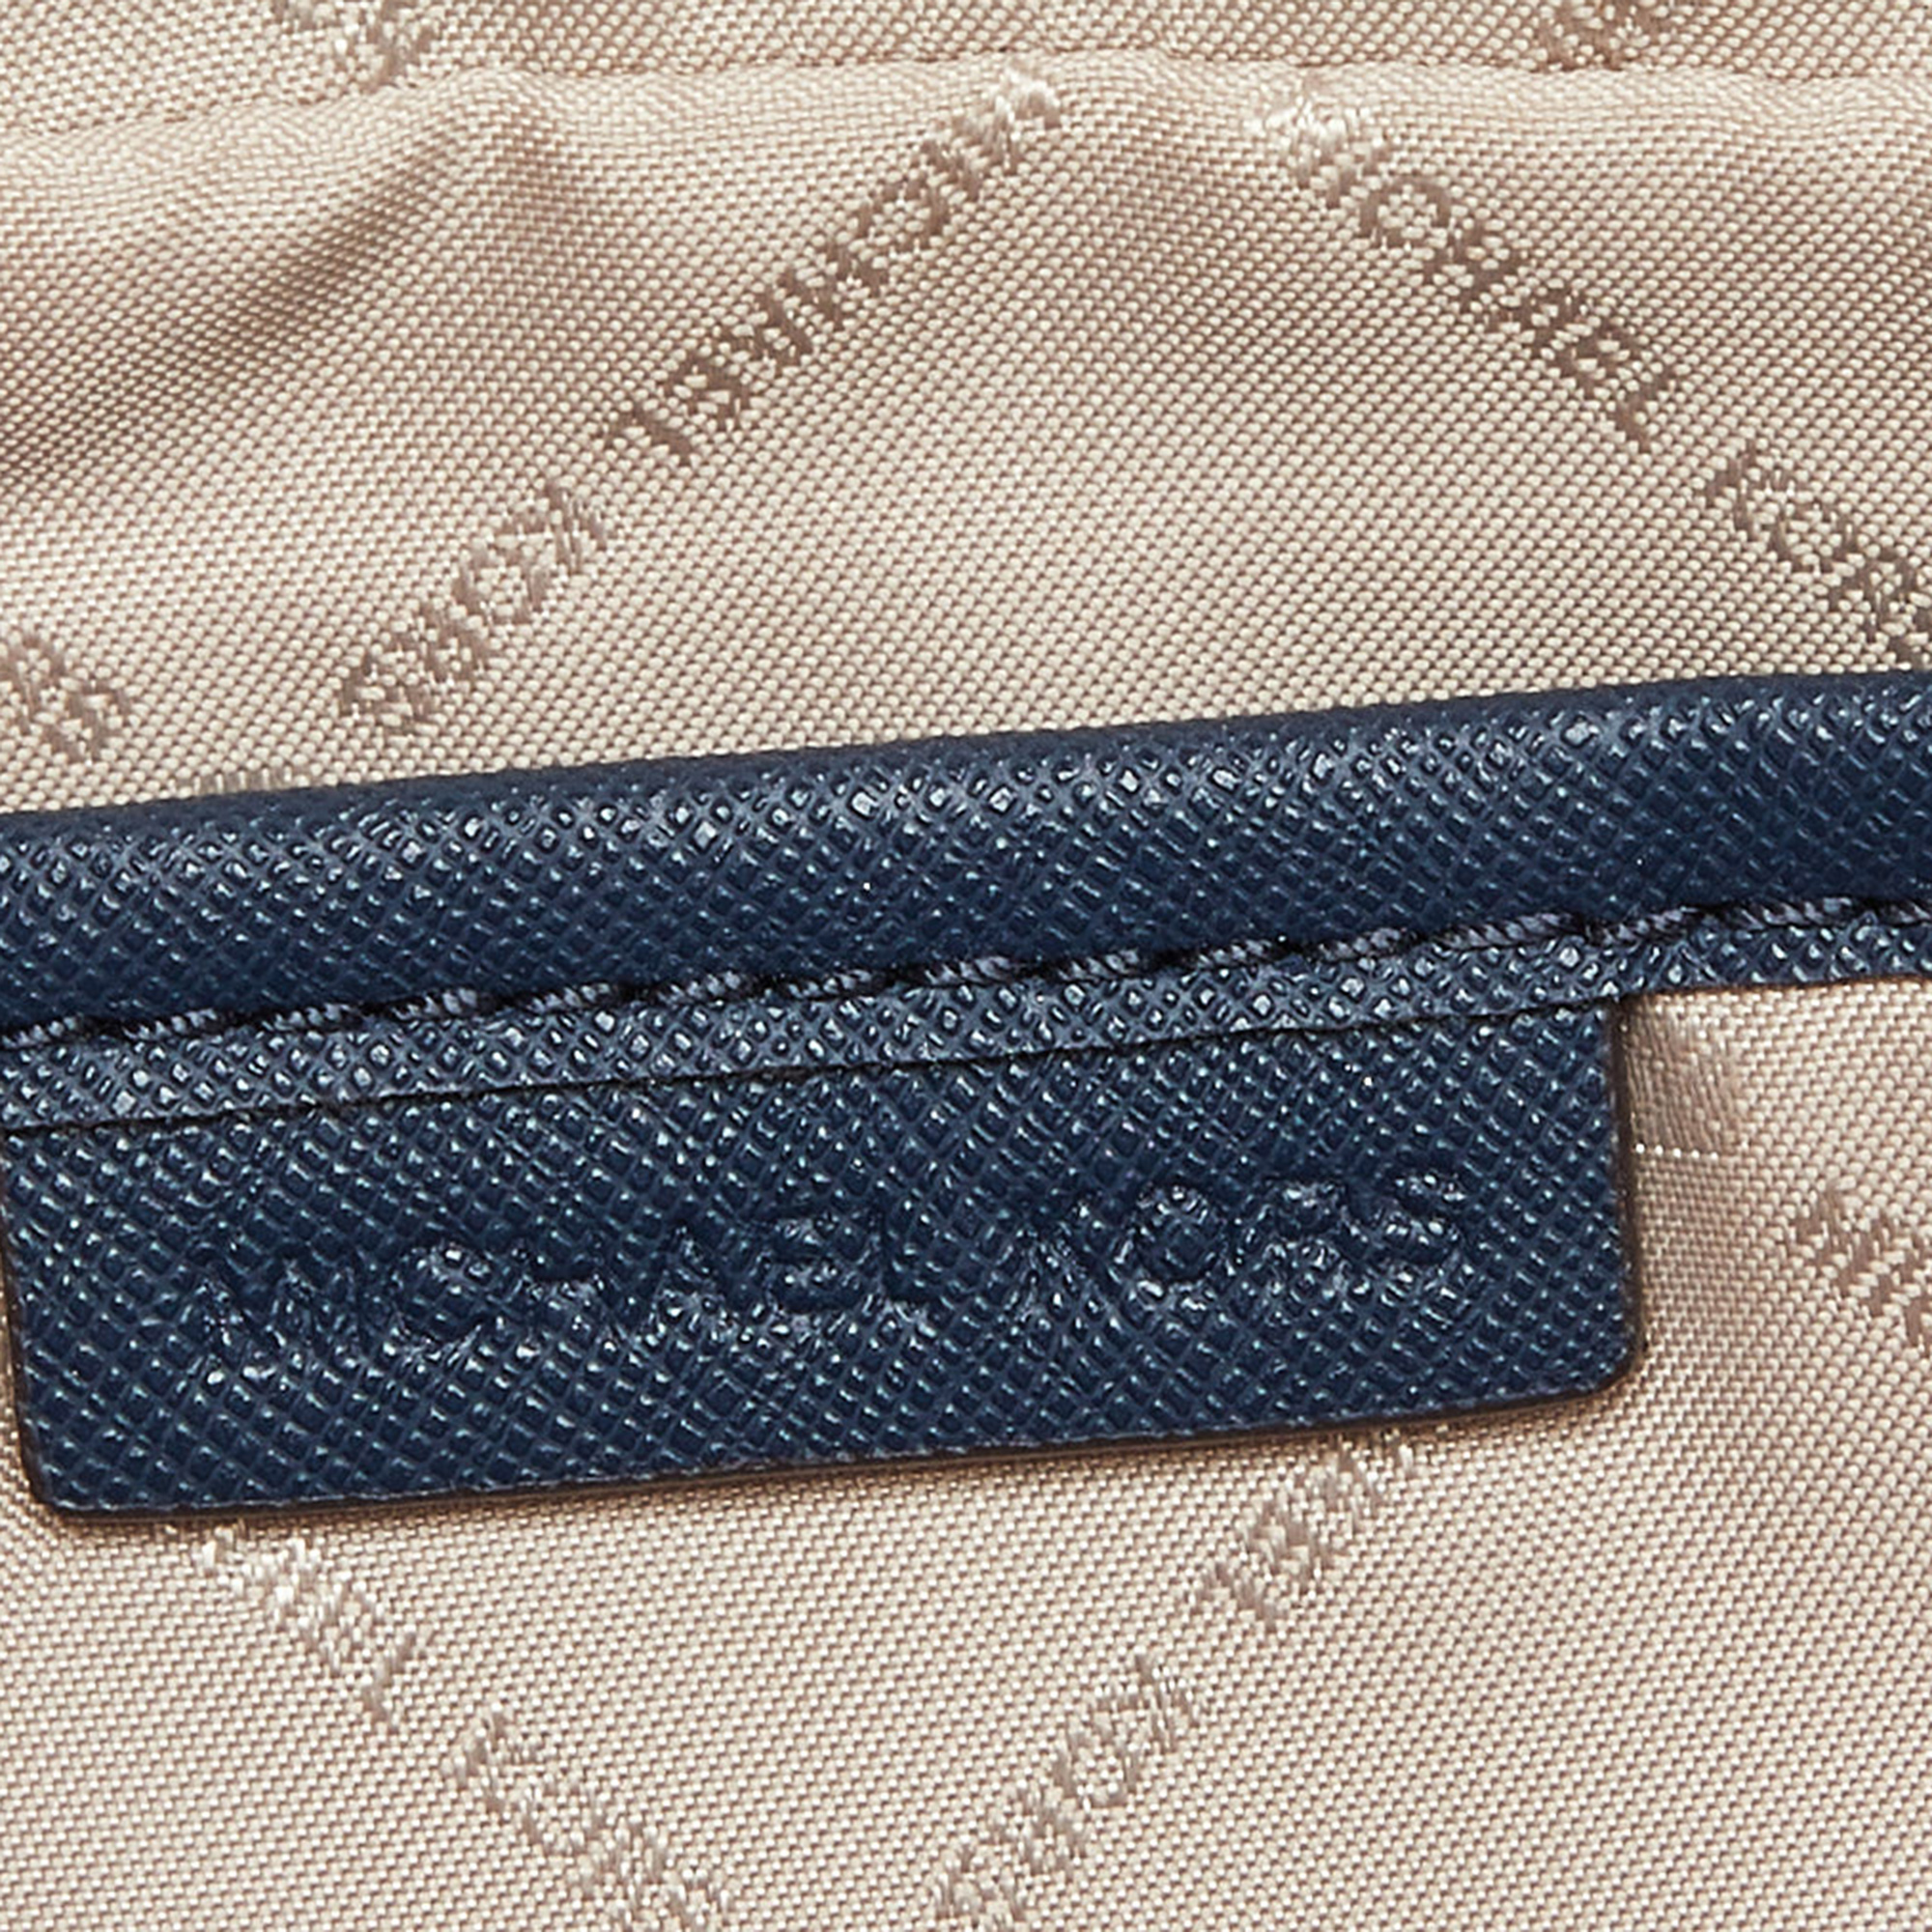 Michael Kors Blue Leather Sandrine Stud Crossbody Bag